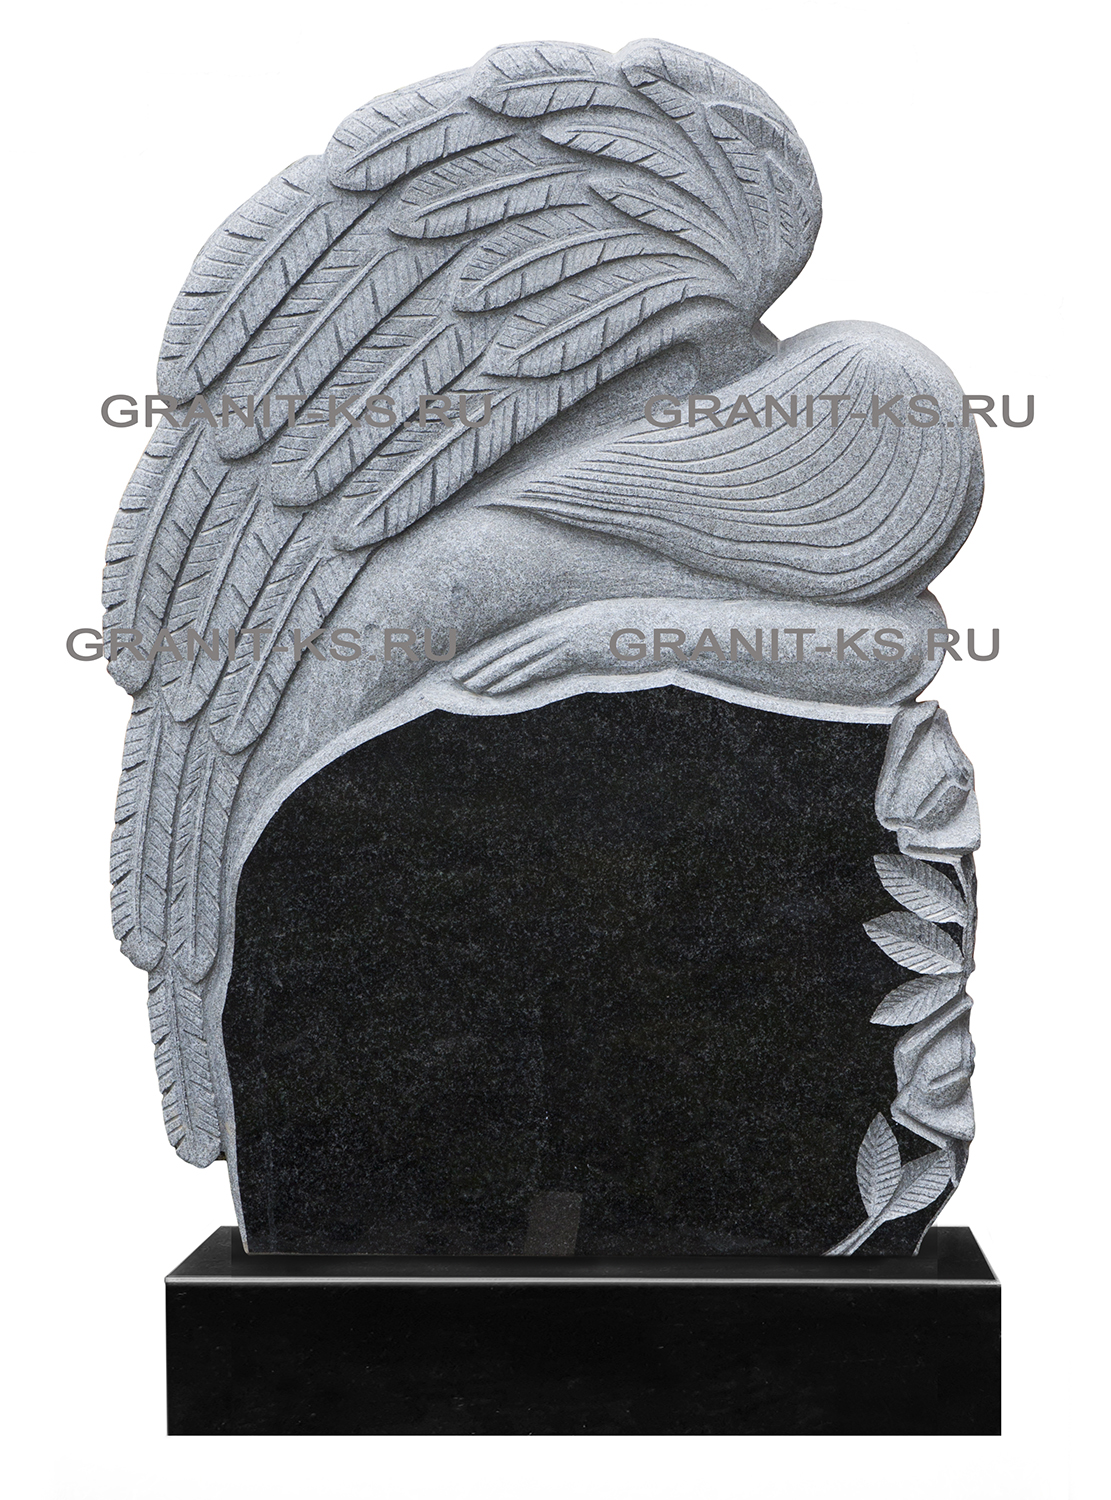 Комплект: Памятник  с ангелом арт.H135